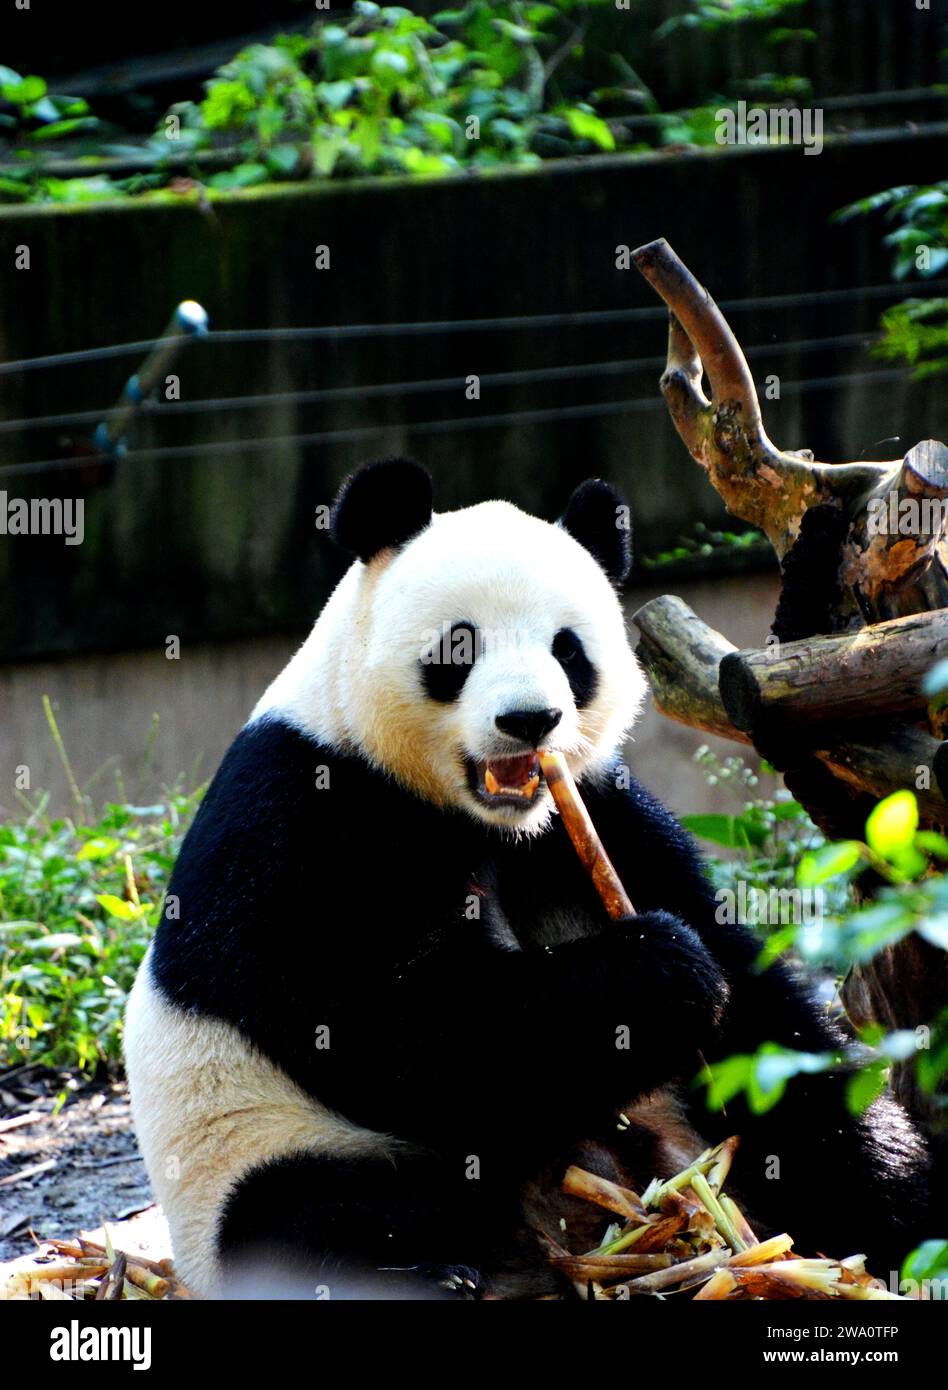 Un panda gigante masticando un palo de bambú en el instituto de investigación Chengdu. Foto de stock